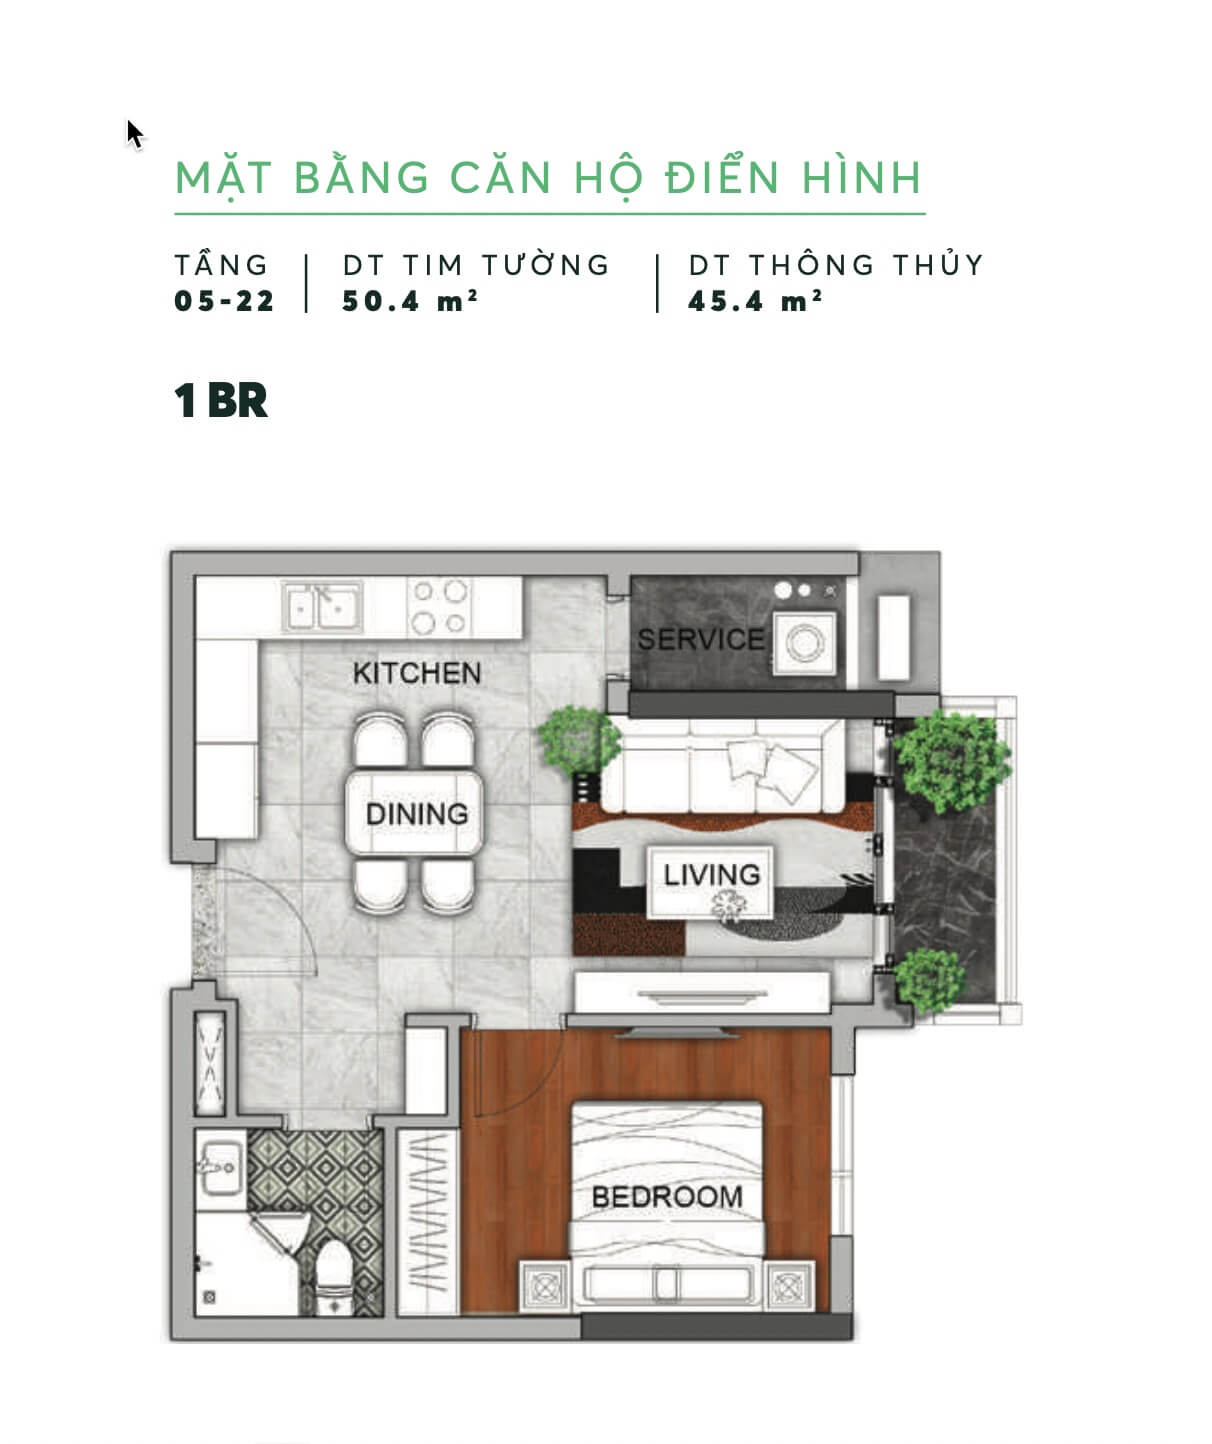 Mat Bang Can Ho Dien Hinh 16